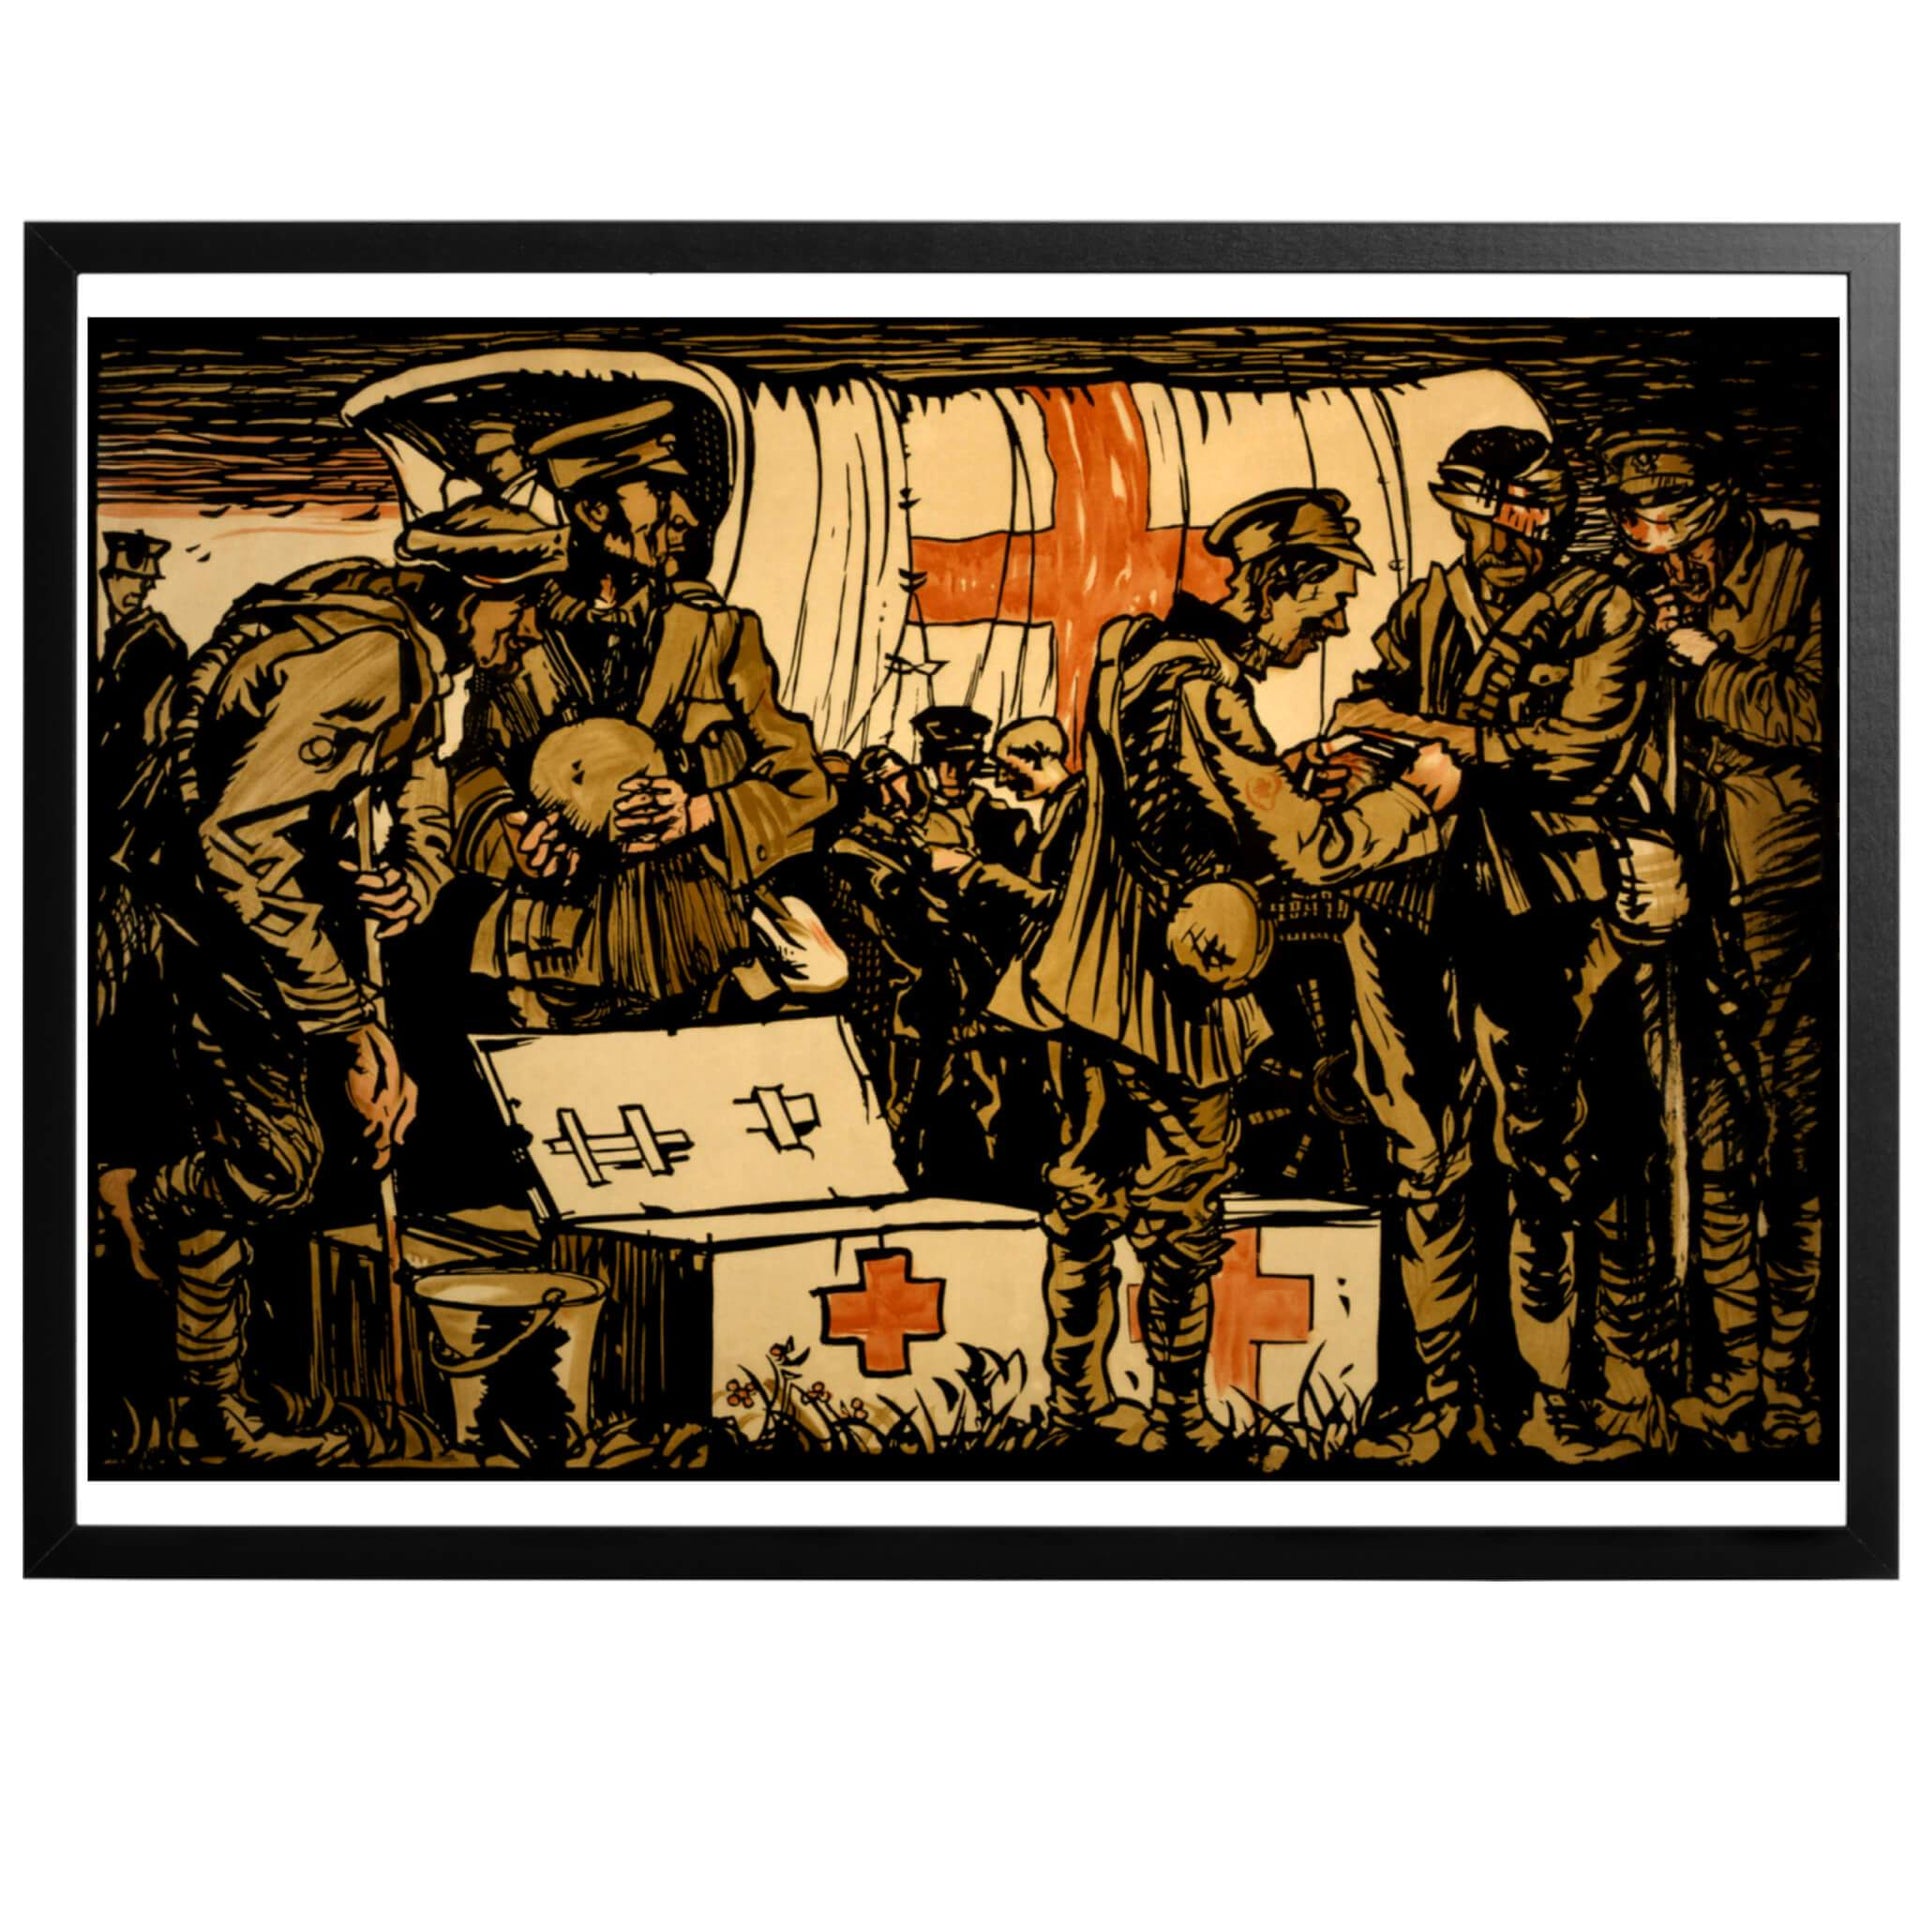 Affischen historia är okänd. Tavlan avbildar soldater som tar hand om andra sårade soldater under första världskriget. De Medicinska utrustningen kommer från den internationella organisationen Röda korset.